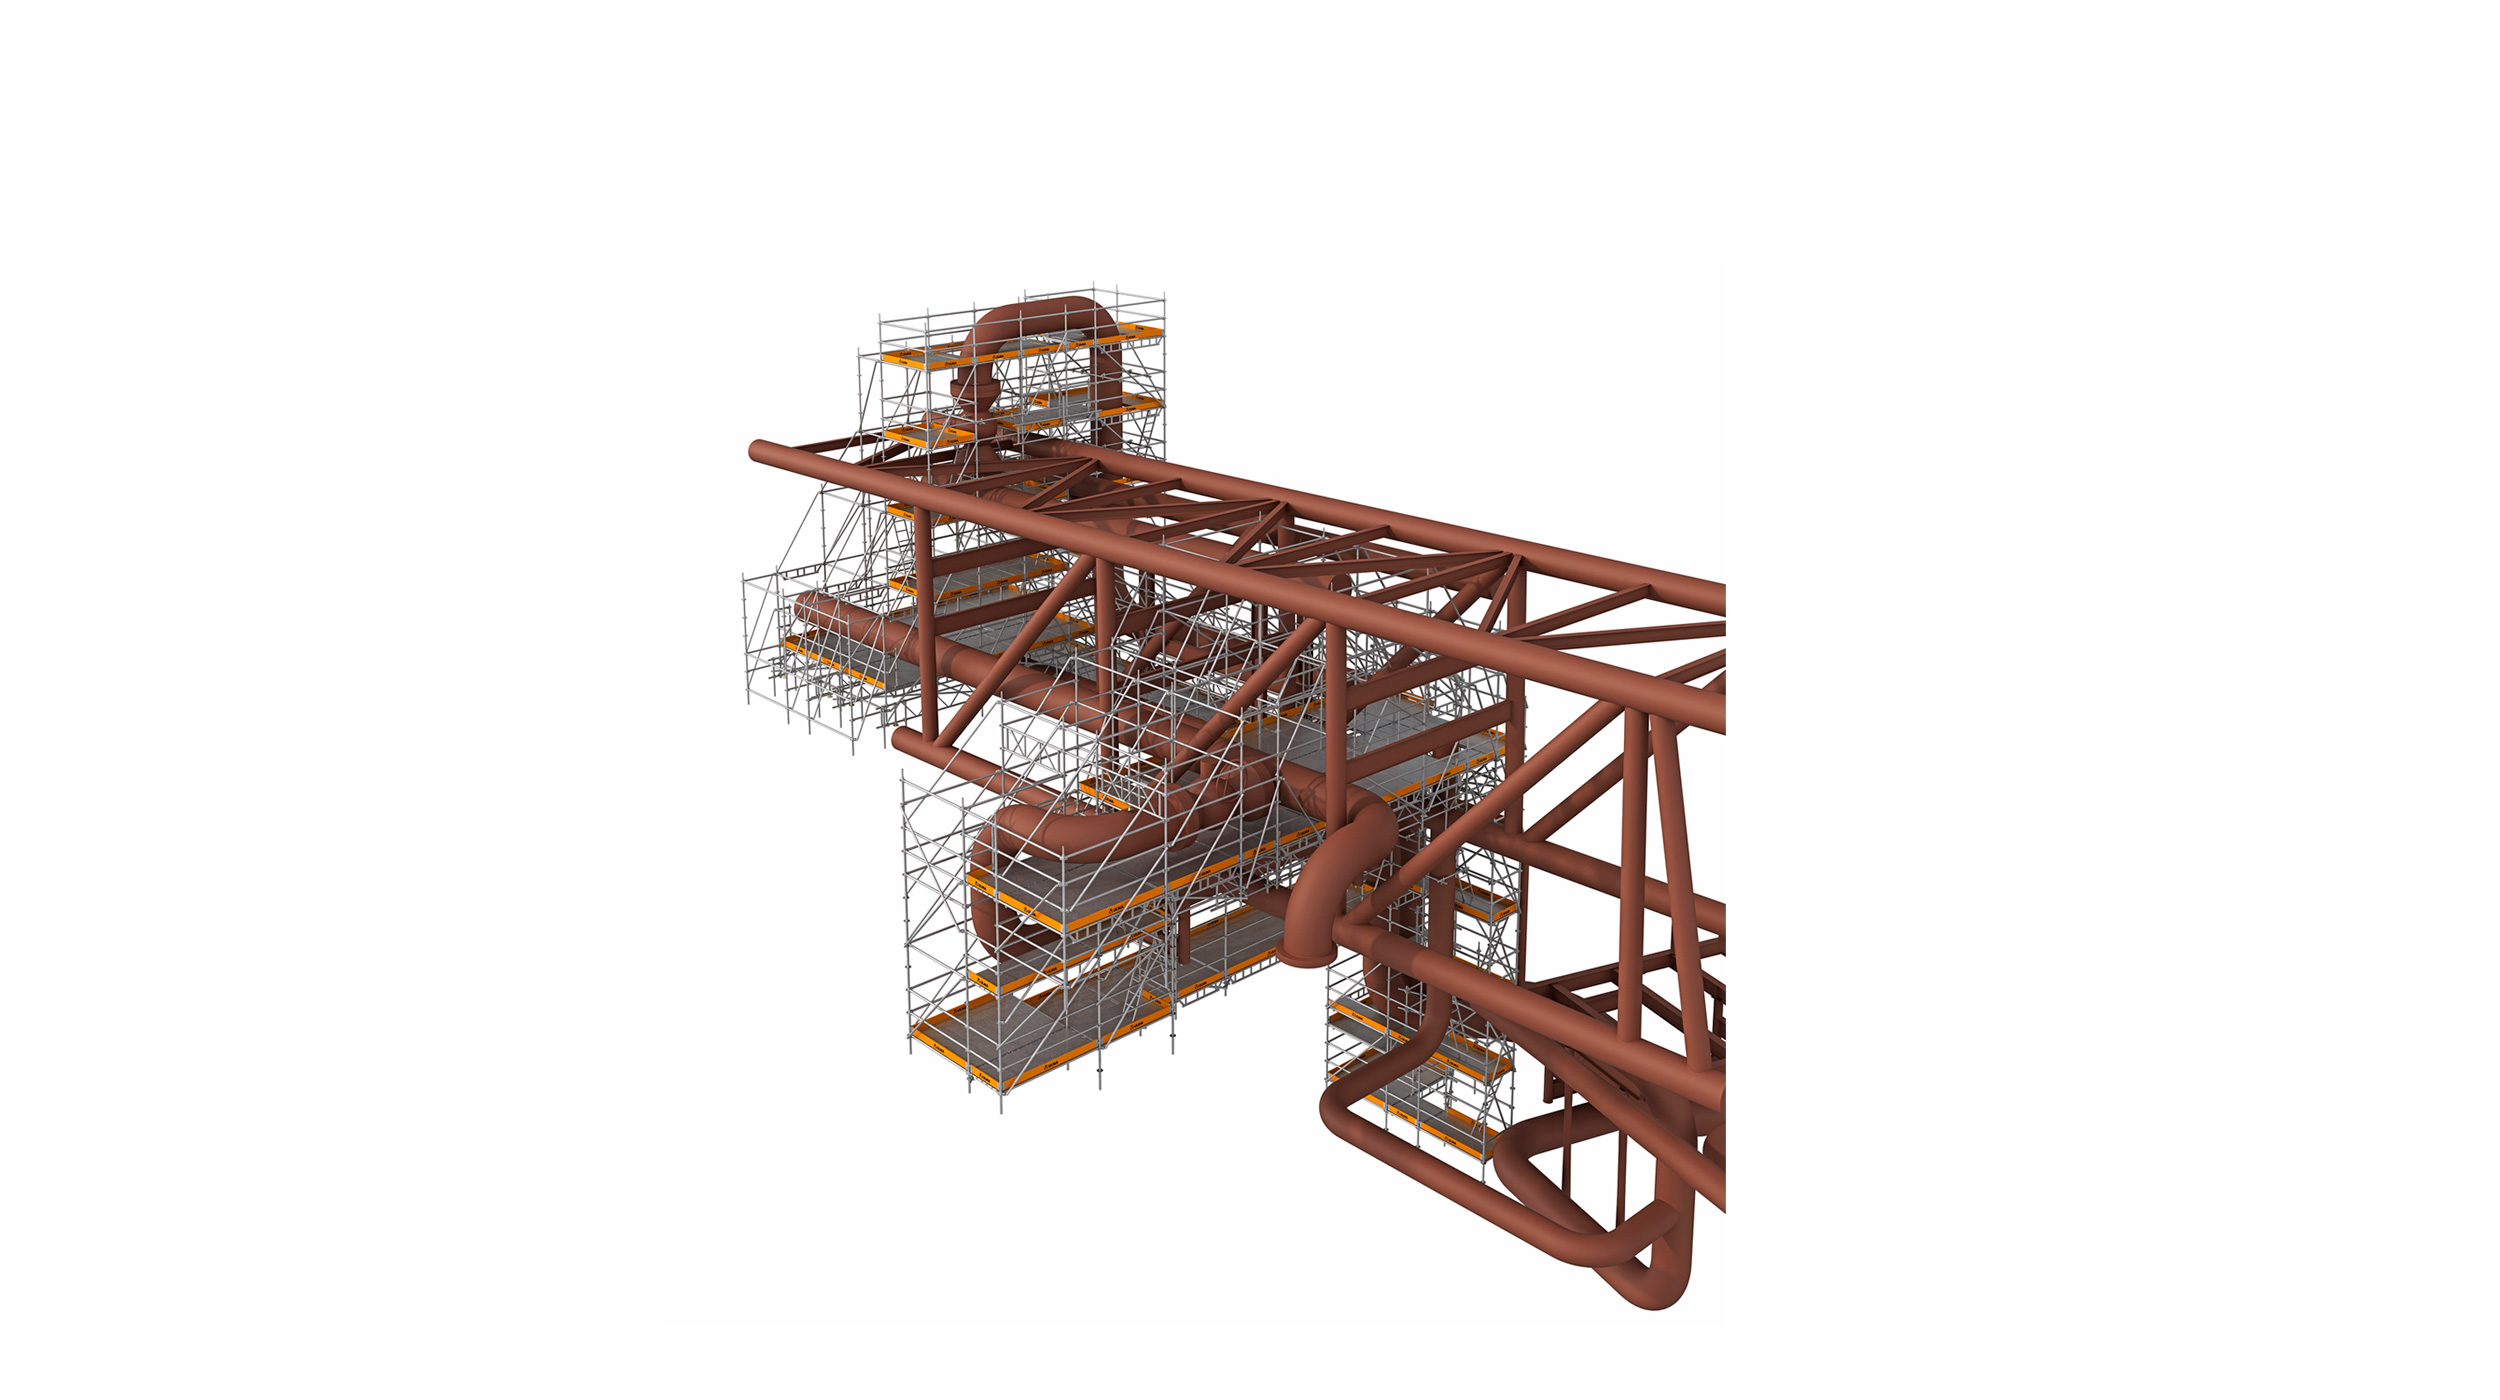 Système d'échafaudage provisoire extrêmement stable et flexible, centré sur les tâches de construction et d'entretien pour les installations industrielles et de production d'énergie.